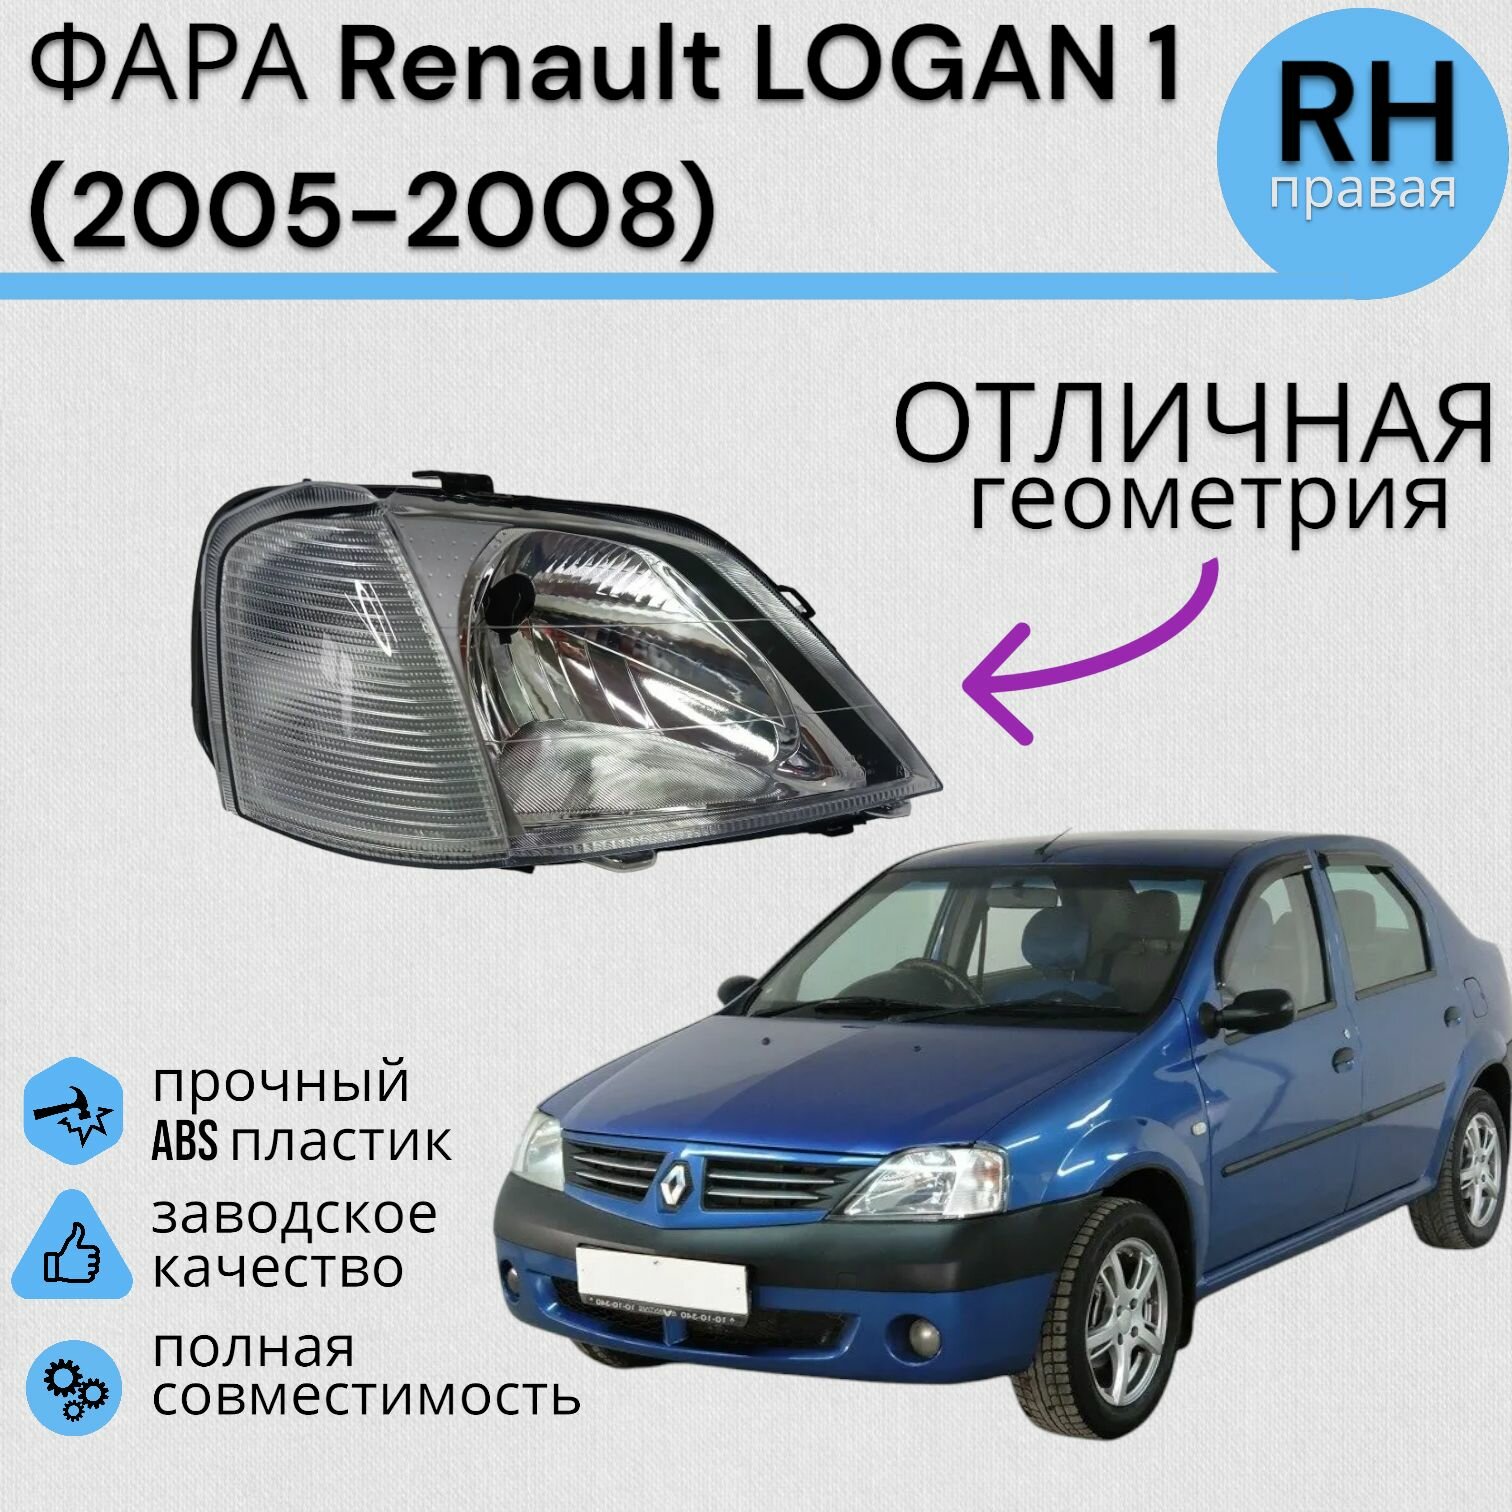 Фара Рено Логан Renault LOGAN (2005-2008) электро коректор Правая